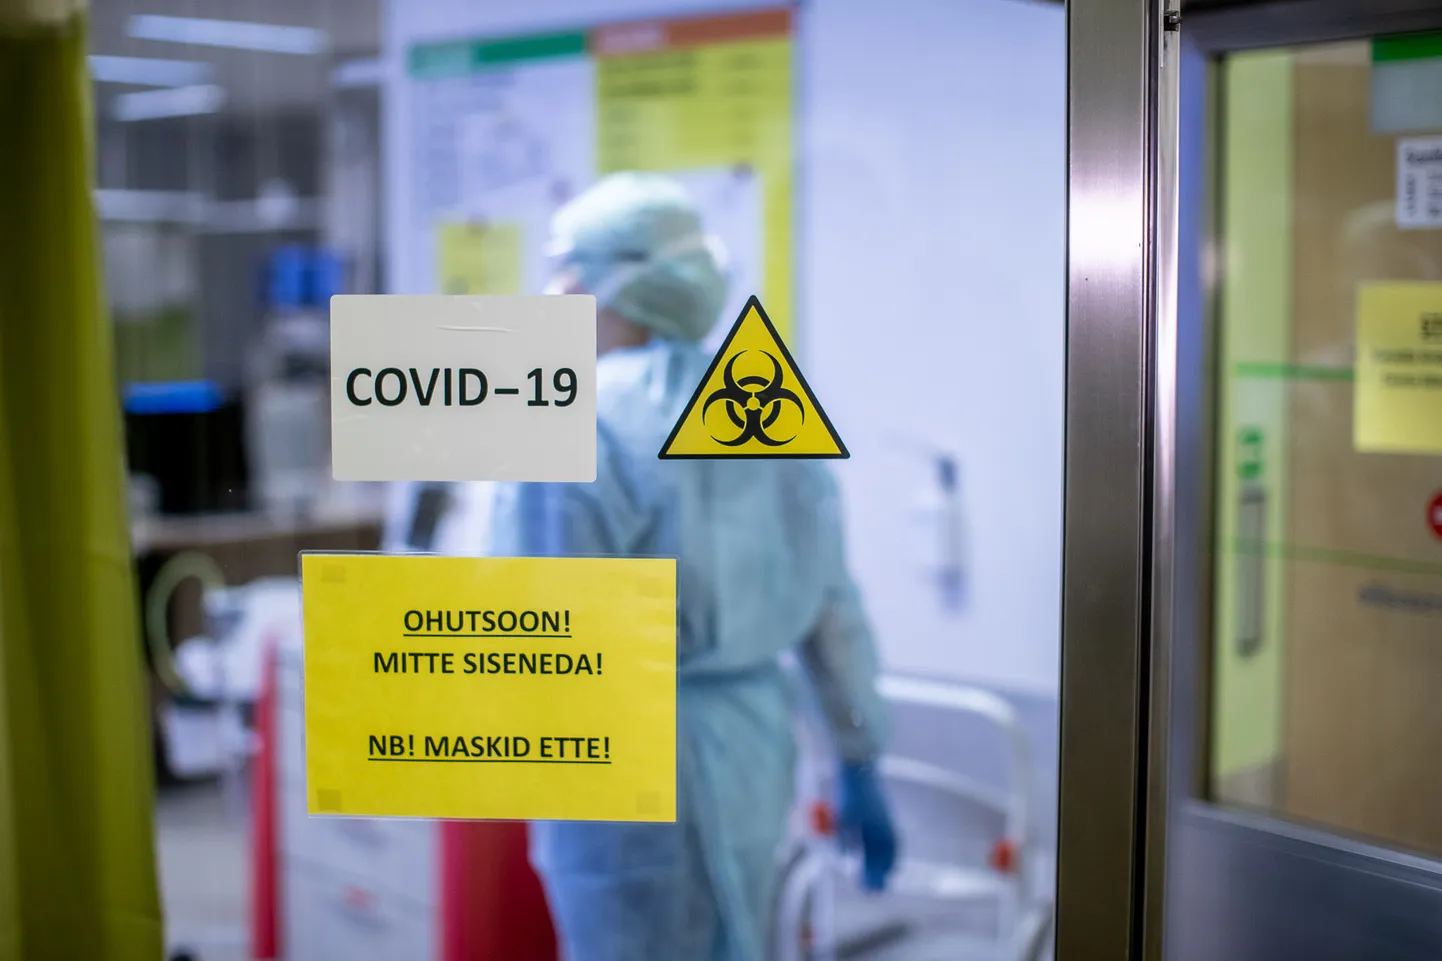 Eesti meditsiinitöötajad on mõista andnud, et olukord tervishoiuasutustes on jõudnud kriitilise taluvuspiirini. Vastavasisulise avalduse tegi eile Tartu arstide liit.